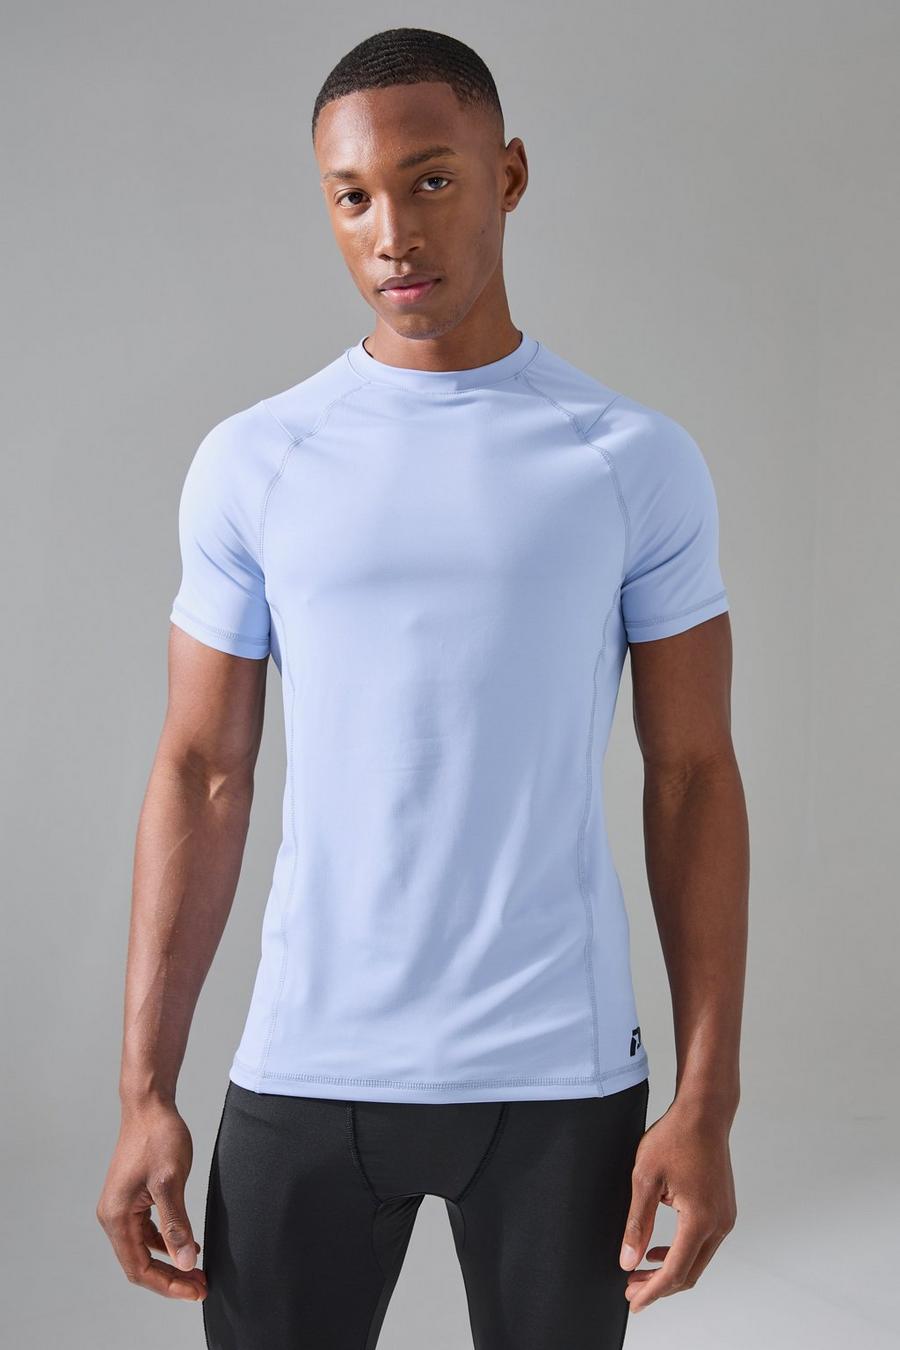 Light blue Gunna Active Muscle Fit Raglan T-shirt